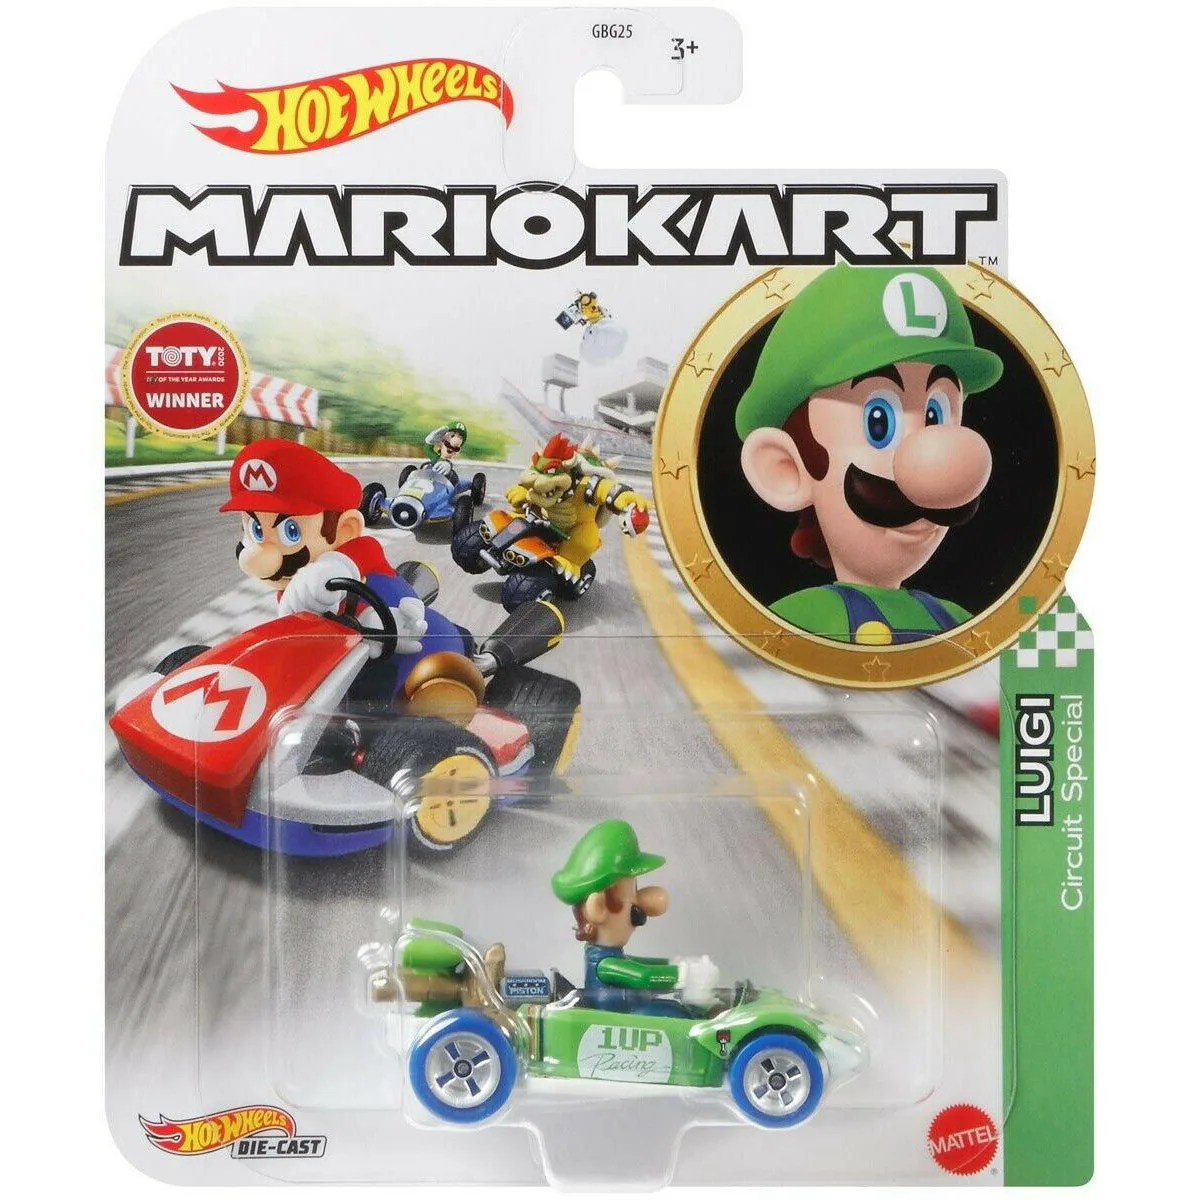 Sıcak tekerlekler Mario Kart karakter araçları-Luigi-devre özel Mario Kart koleksiyonu Metal pres döküm arabalar çocuk oyuncakları Mattel araba